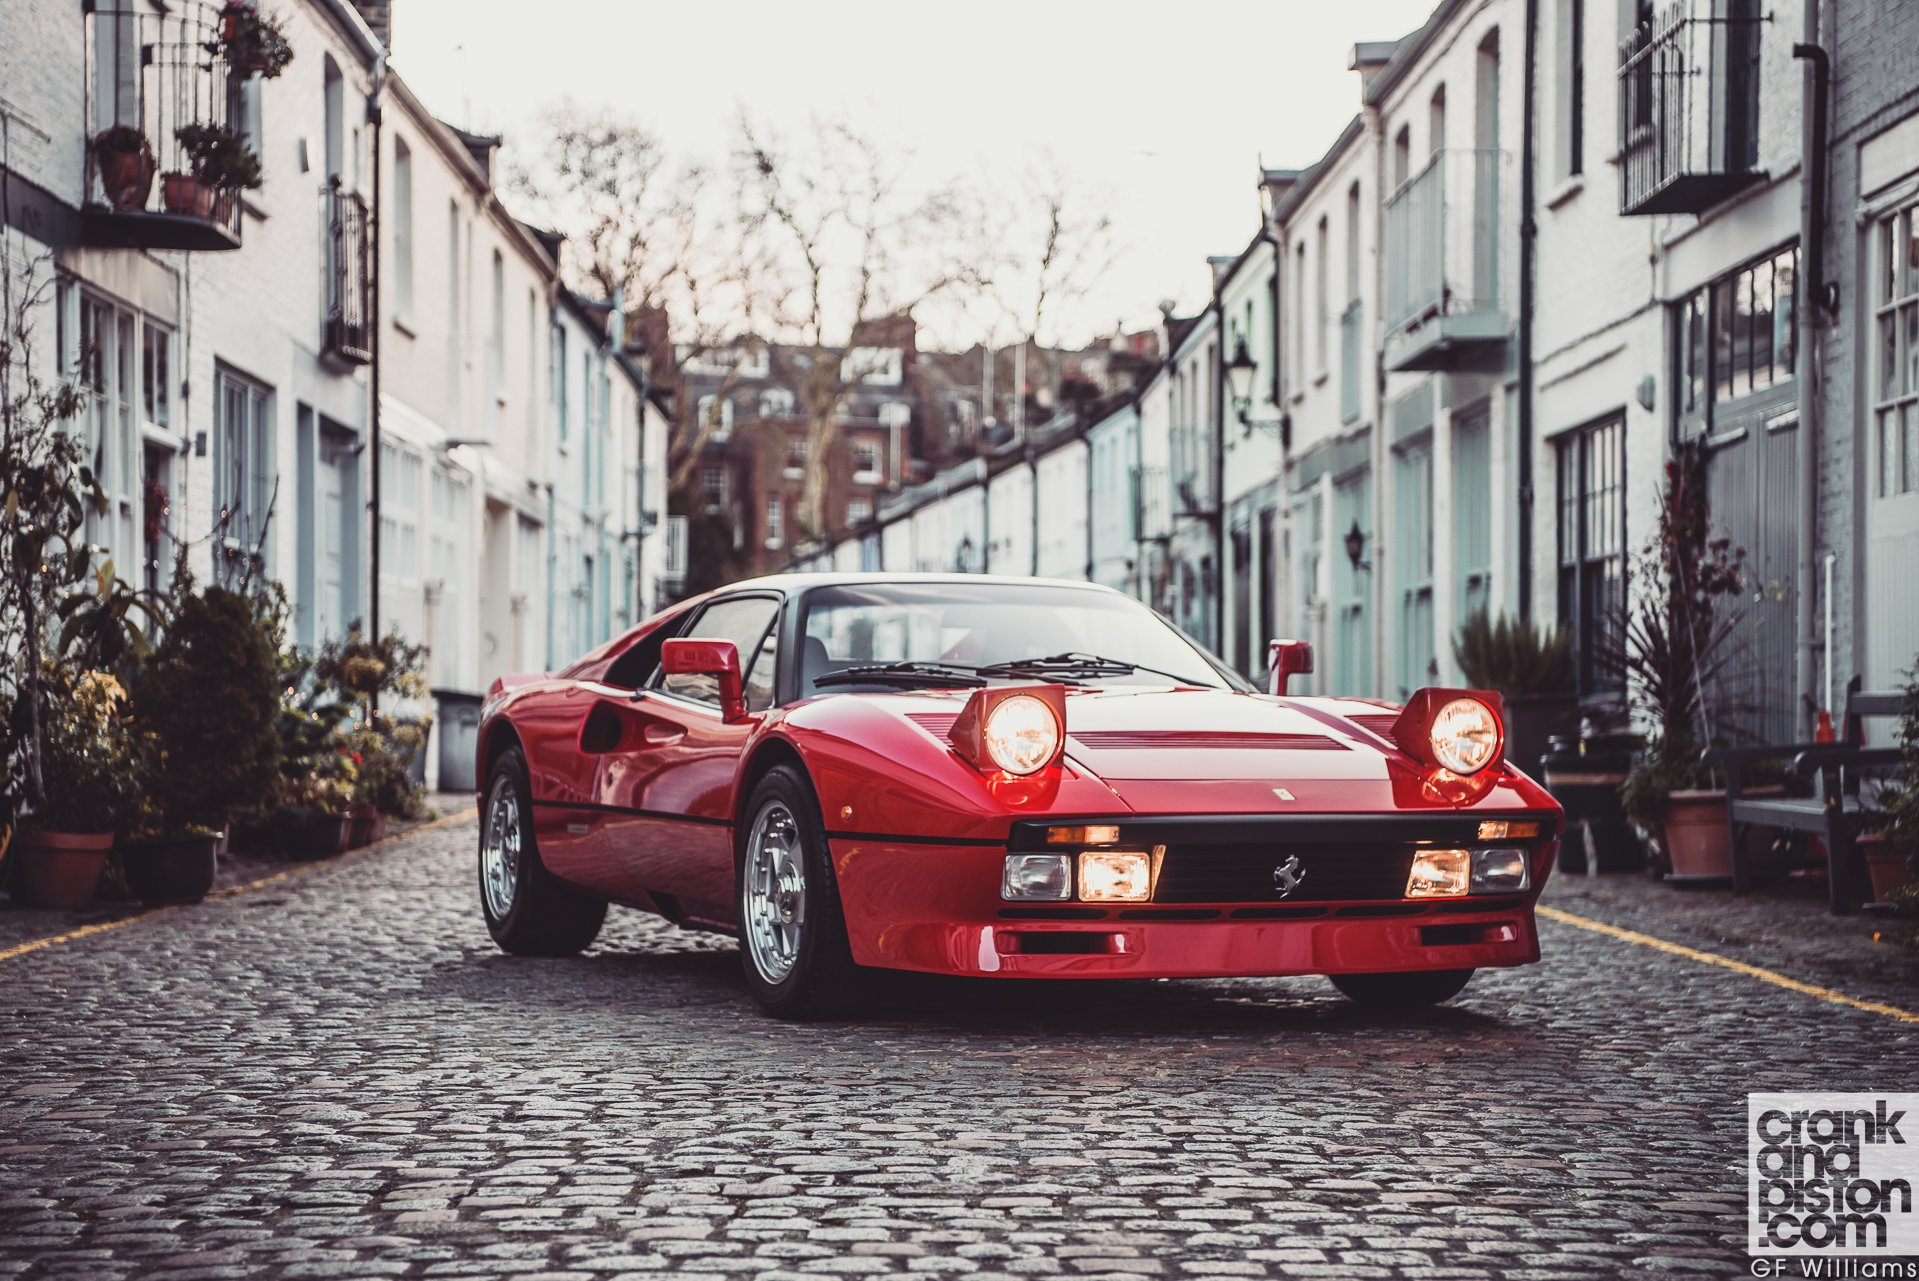 Ferrari 288